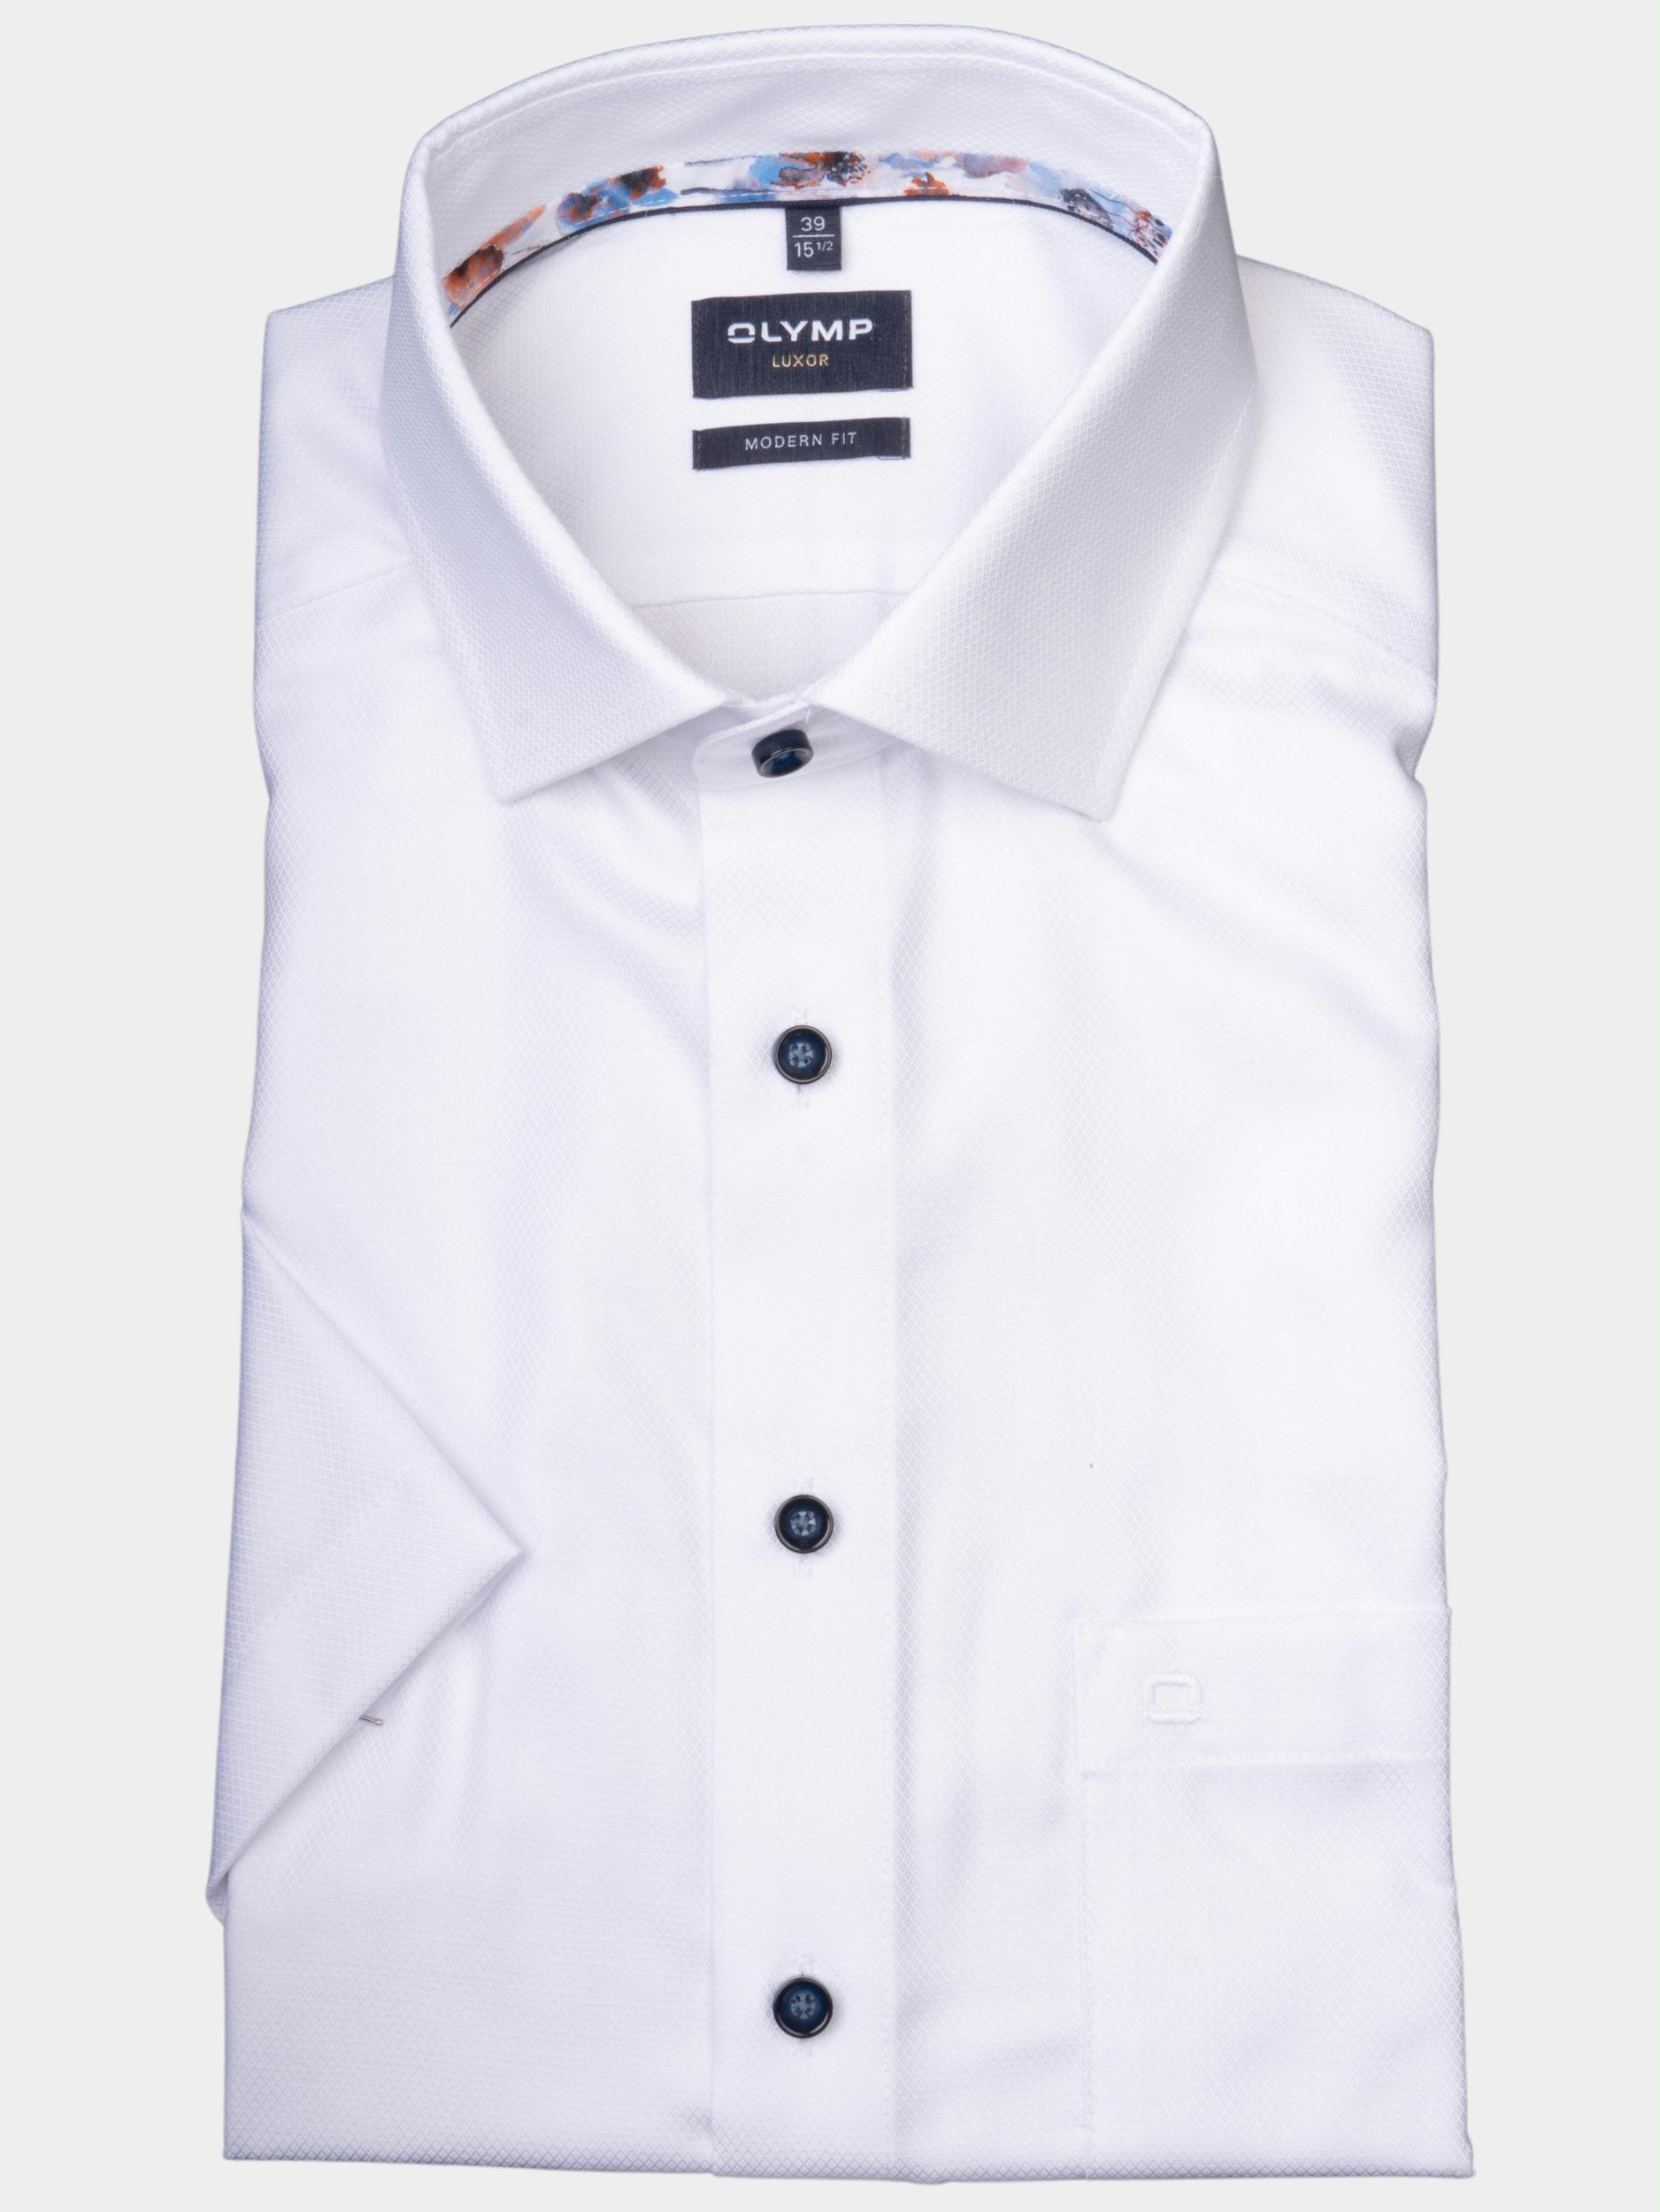 Olymp Business hemd korte mouw Wit 1282/32 Hemden 128232/00